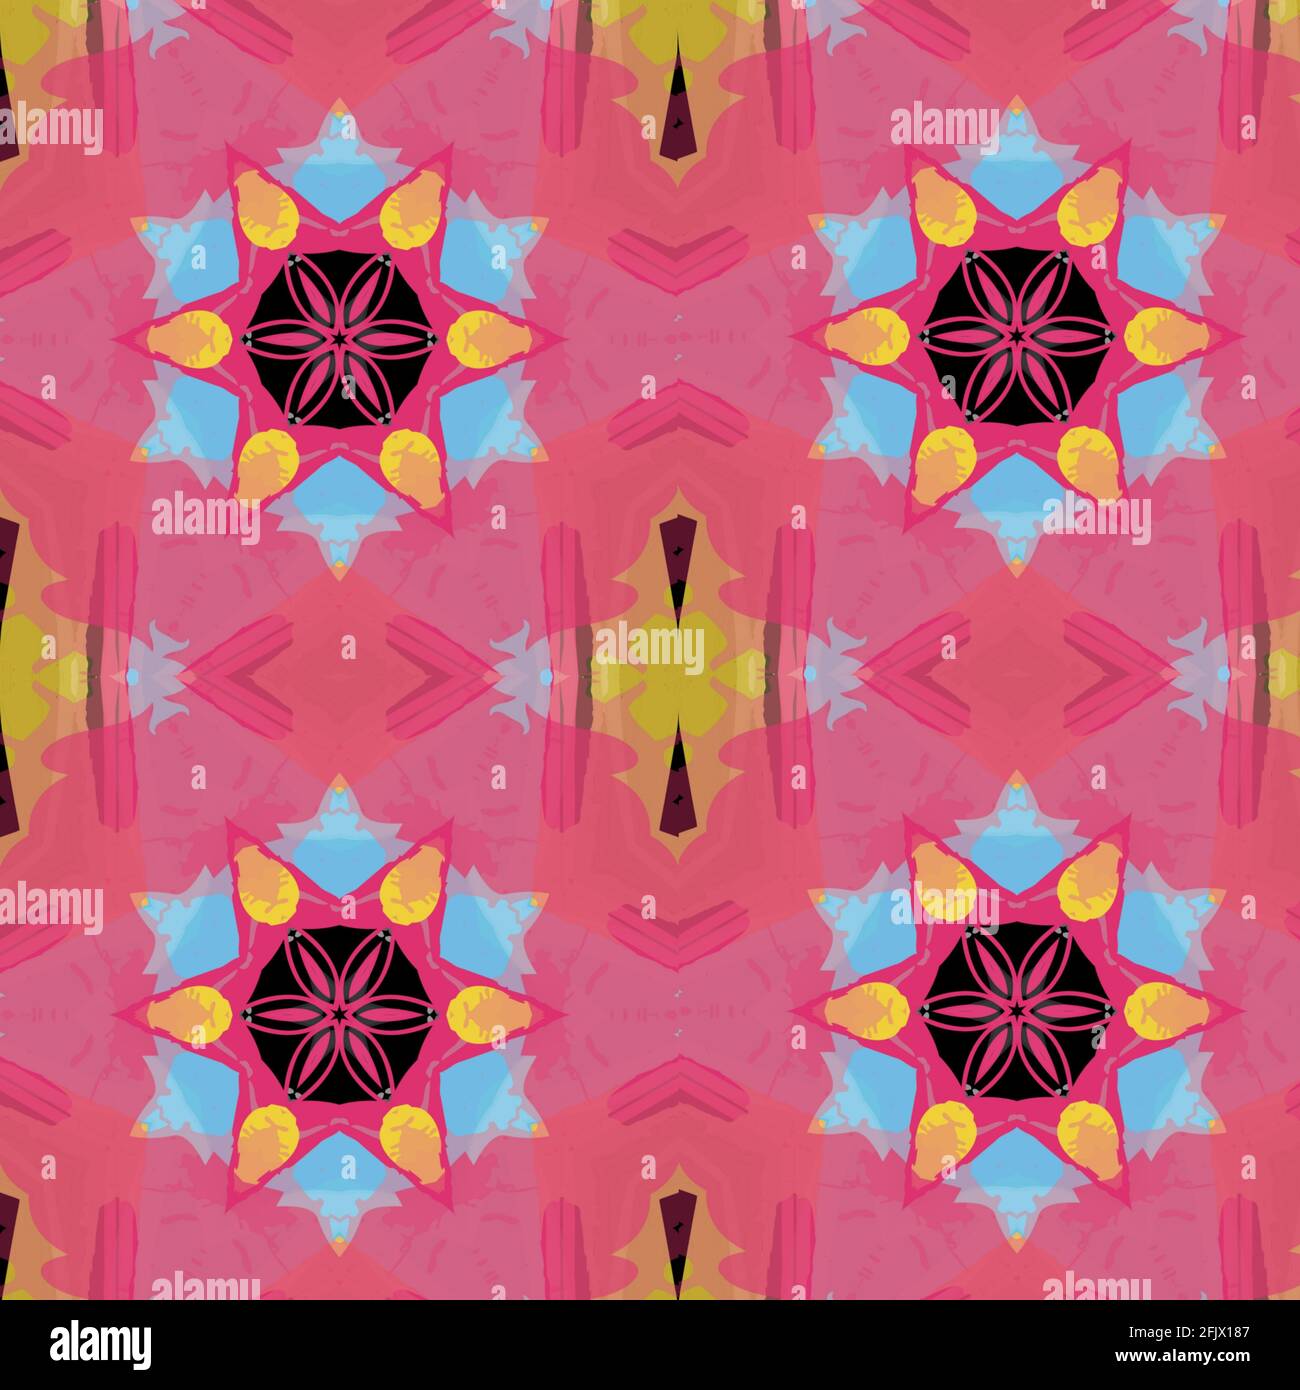 Illustration von lebhaften wiederholten Mustern auf einem rosa Hintergrund Stockfoto